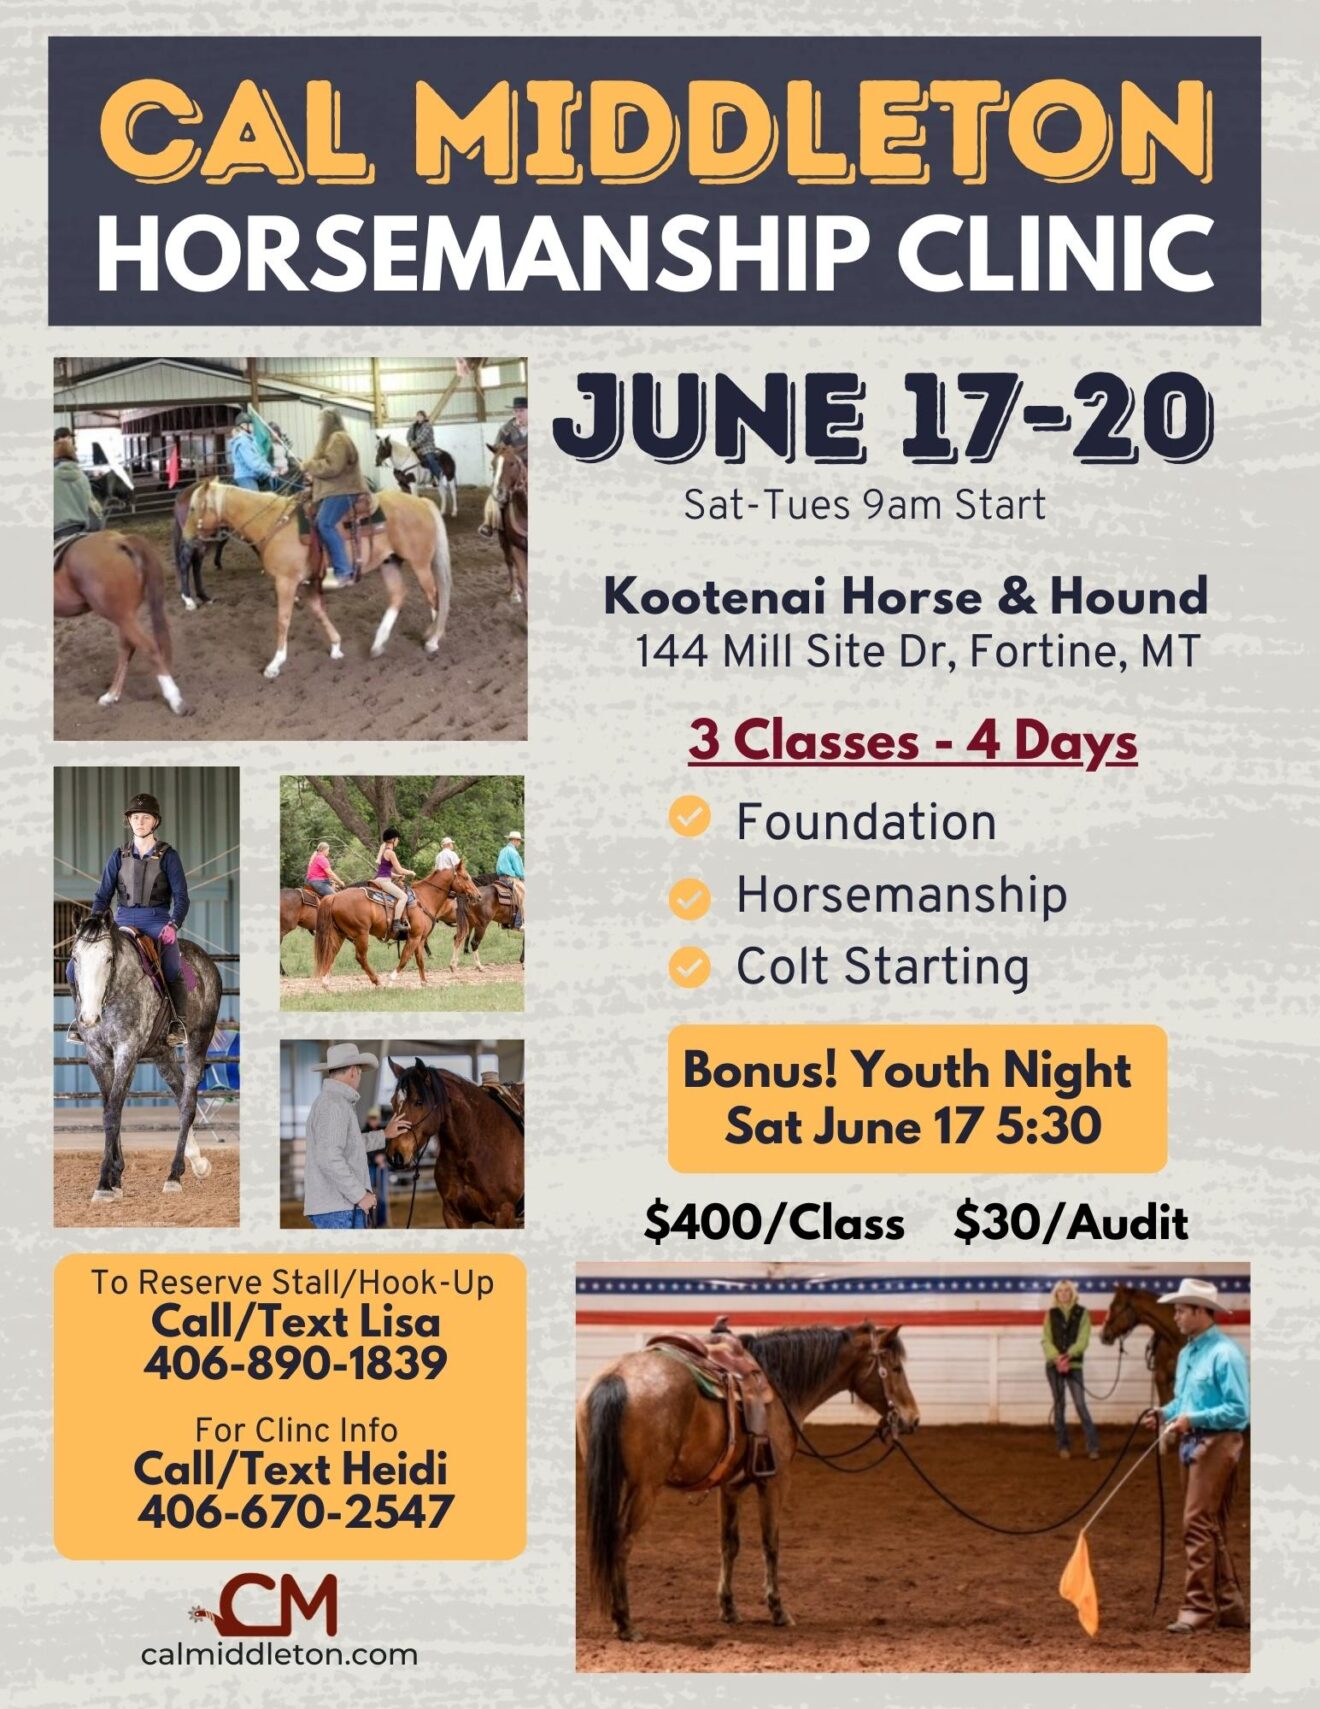 Cal Middleton Horsemanship Clinic